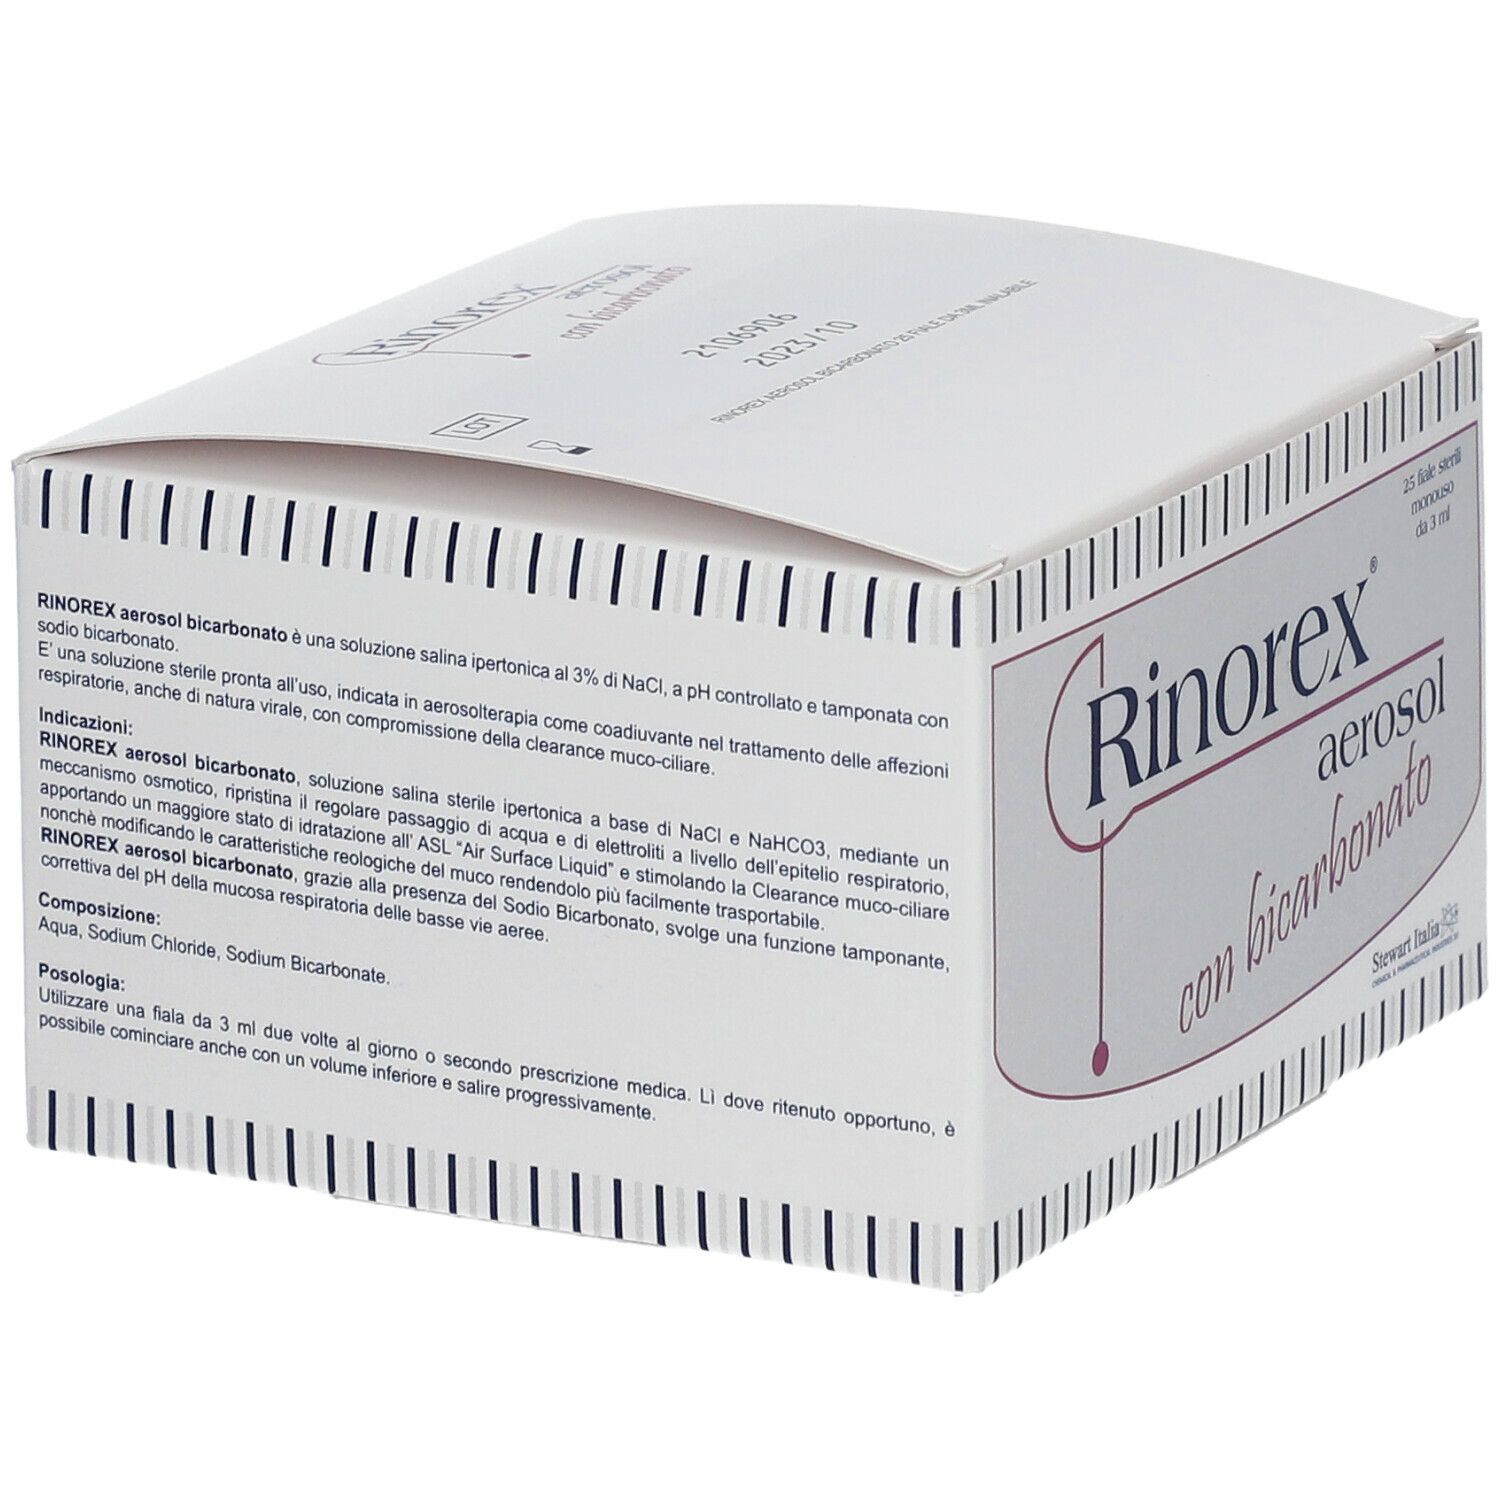 Rinorex® Aerosol Bicarbonato